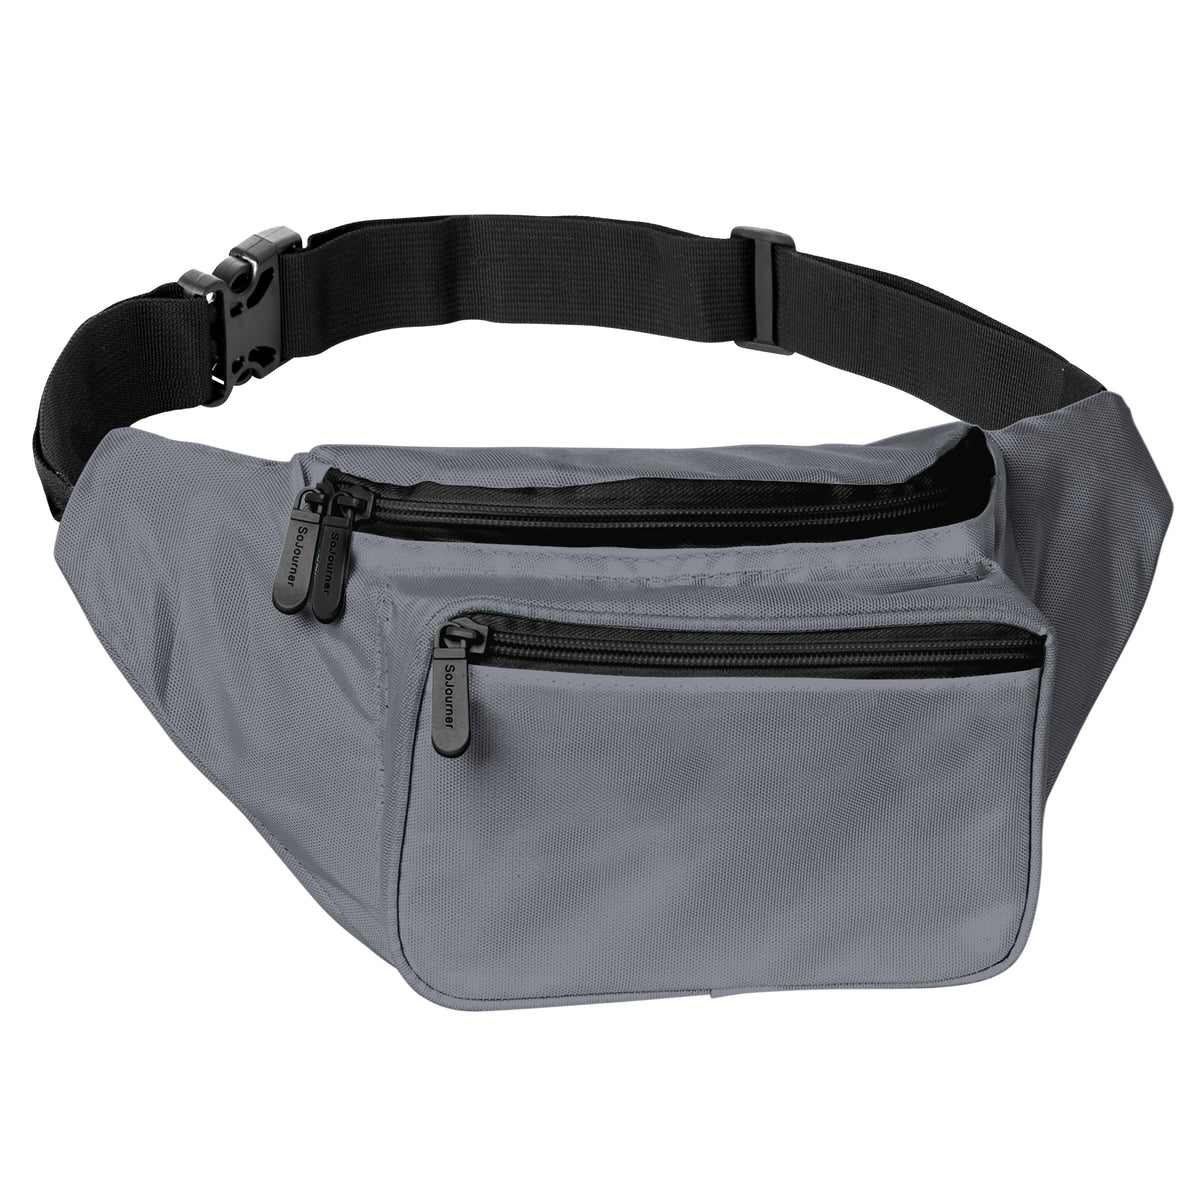 Belt Bag Fanny Pack Extender Adjustable Elastic Strap, Belt Extender for  Waist Bum Bag Compatible with Everywhere Belt Bag Brown